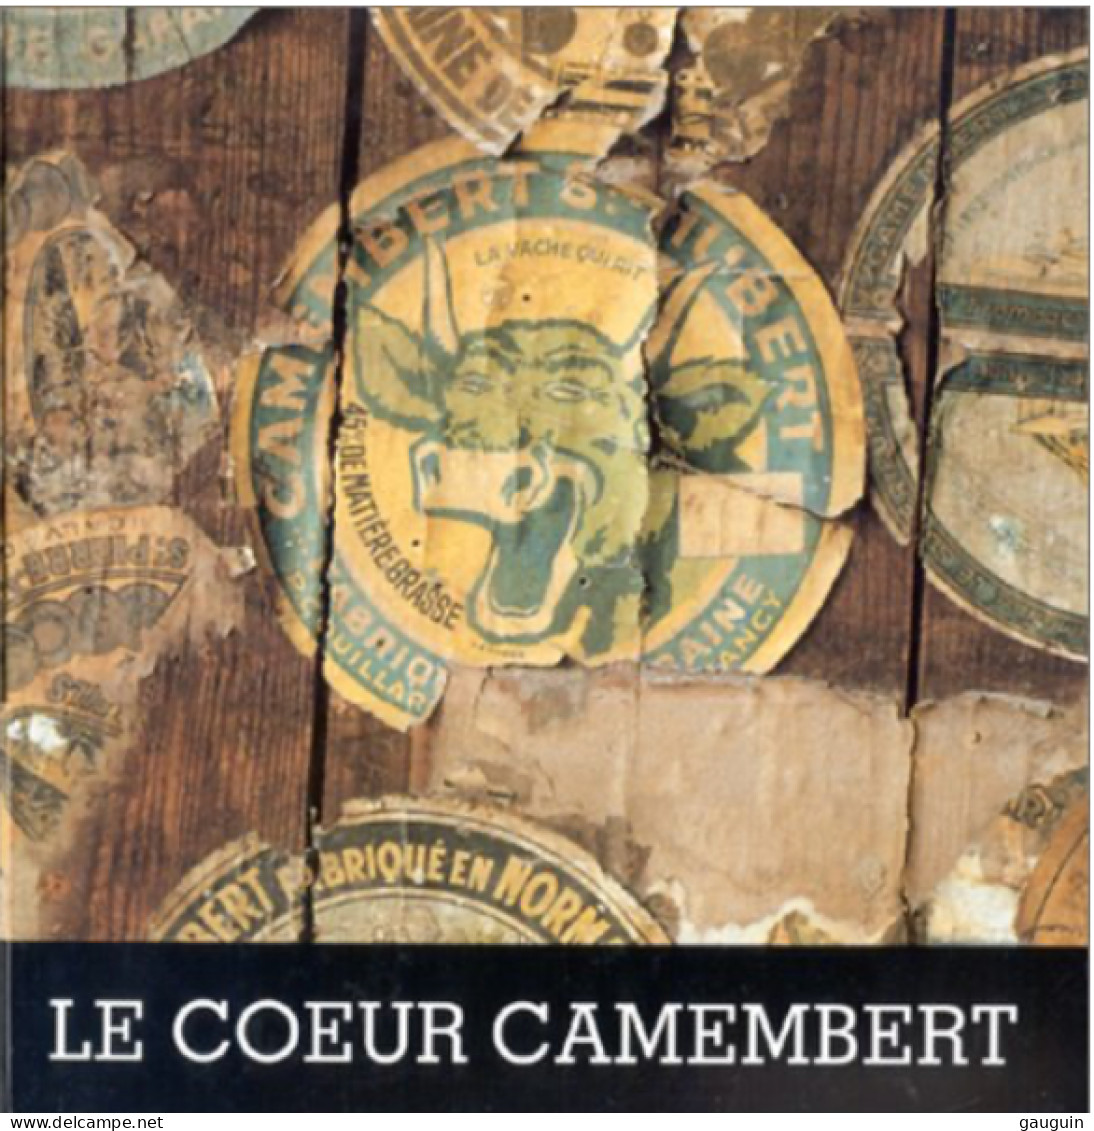 LIVRE - Le "COEUR CAMEMBERT" De O.THIEBAUT - Nombreuses Illustrations Etiquettes Fromages - 107p /1993 - Editions ISOÈTE - Normandië